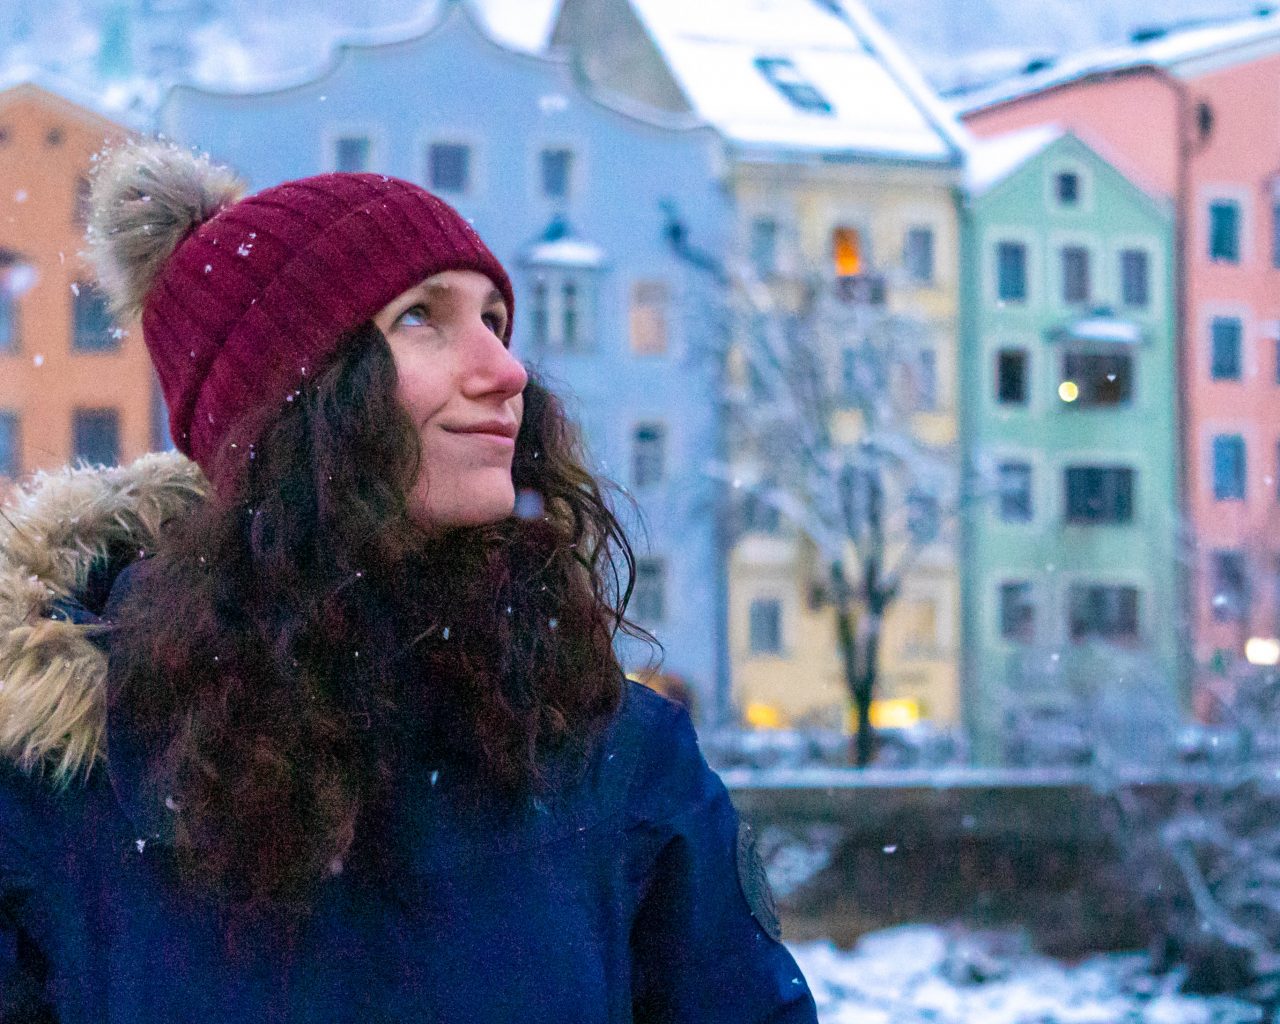 Jessica-in-Innsbruck-met-sneeuw-en-gekleurde-huisjes